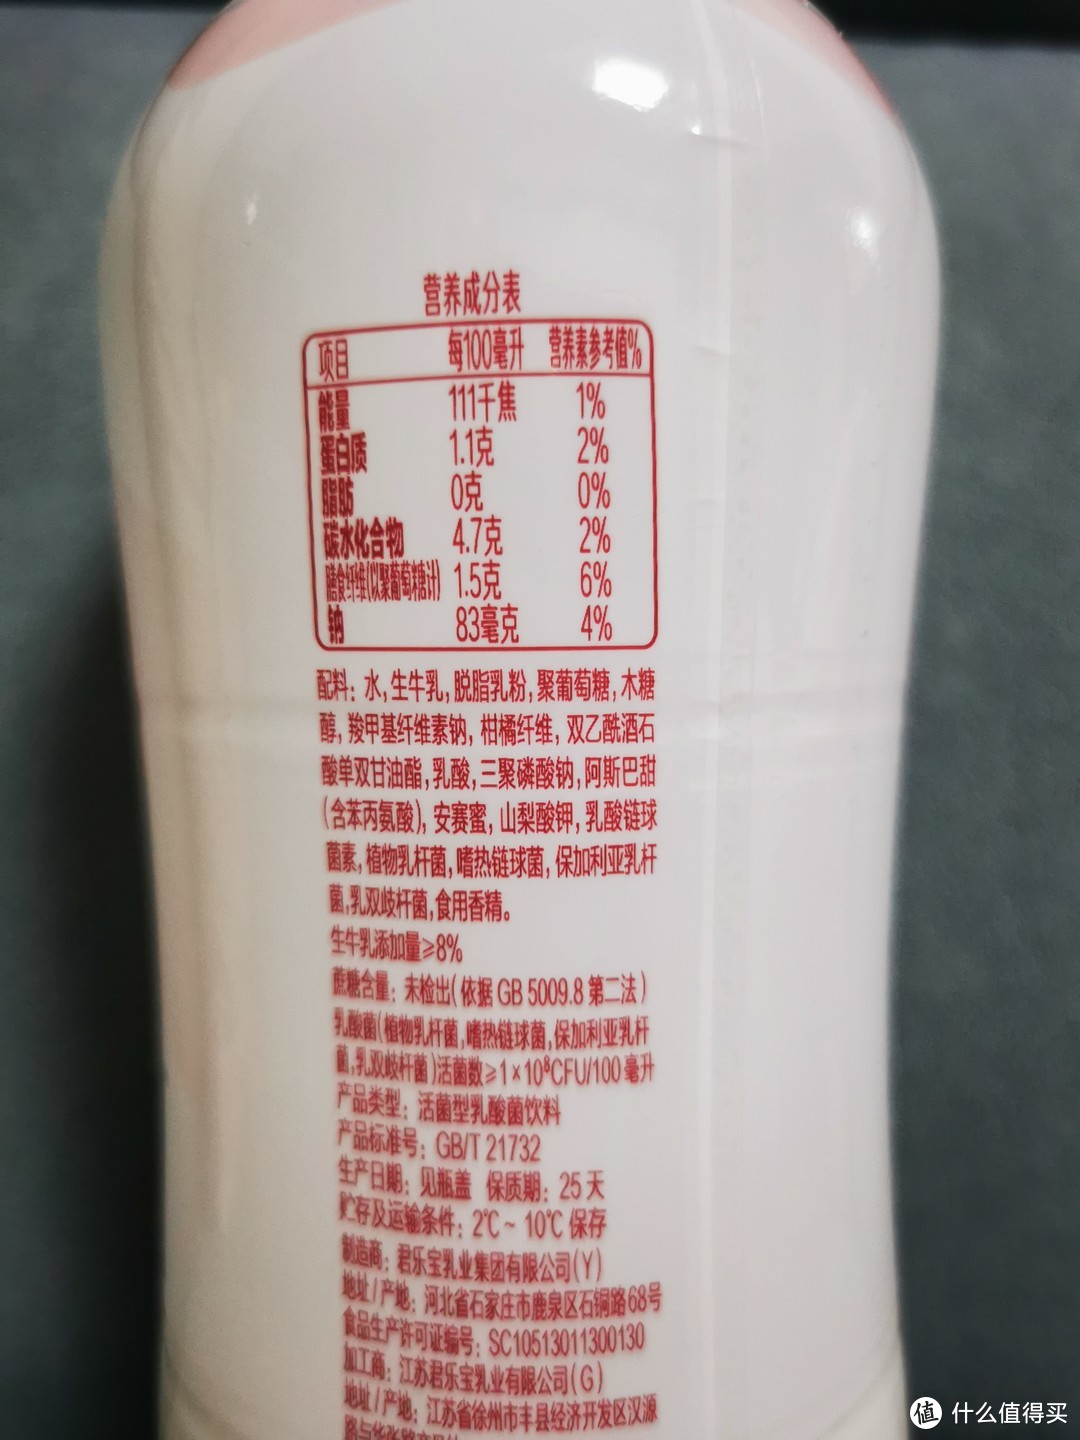 0蔗糖0脂肪的乳酸菌饮料，因为有生牛乳，所以我选择每日清零！